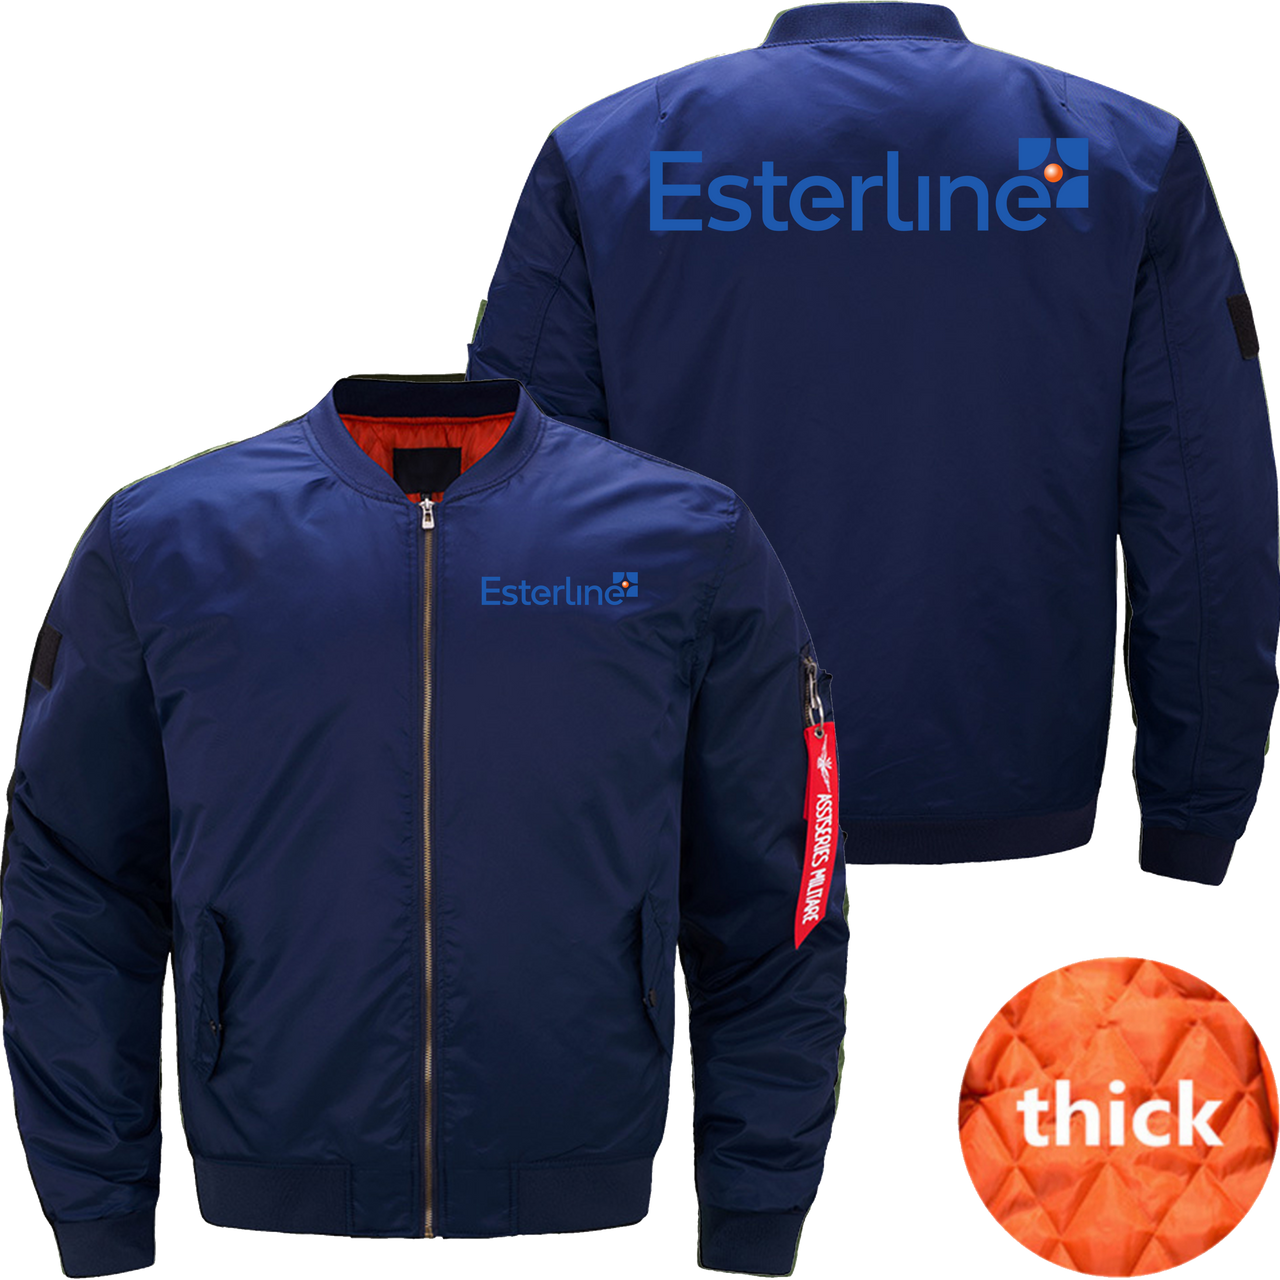 Esterline Jacket